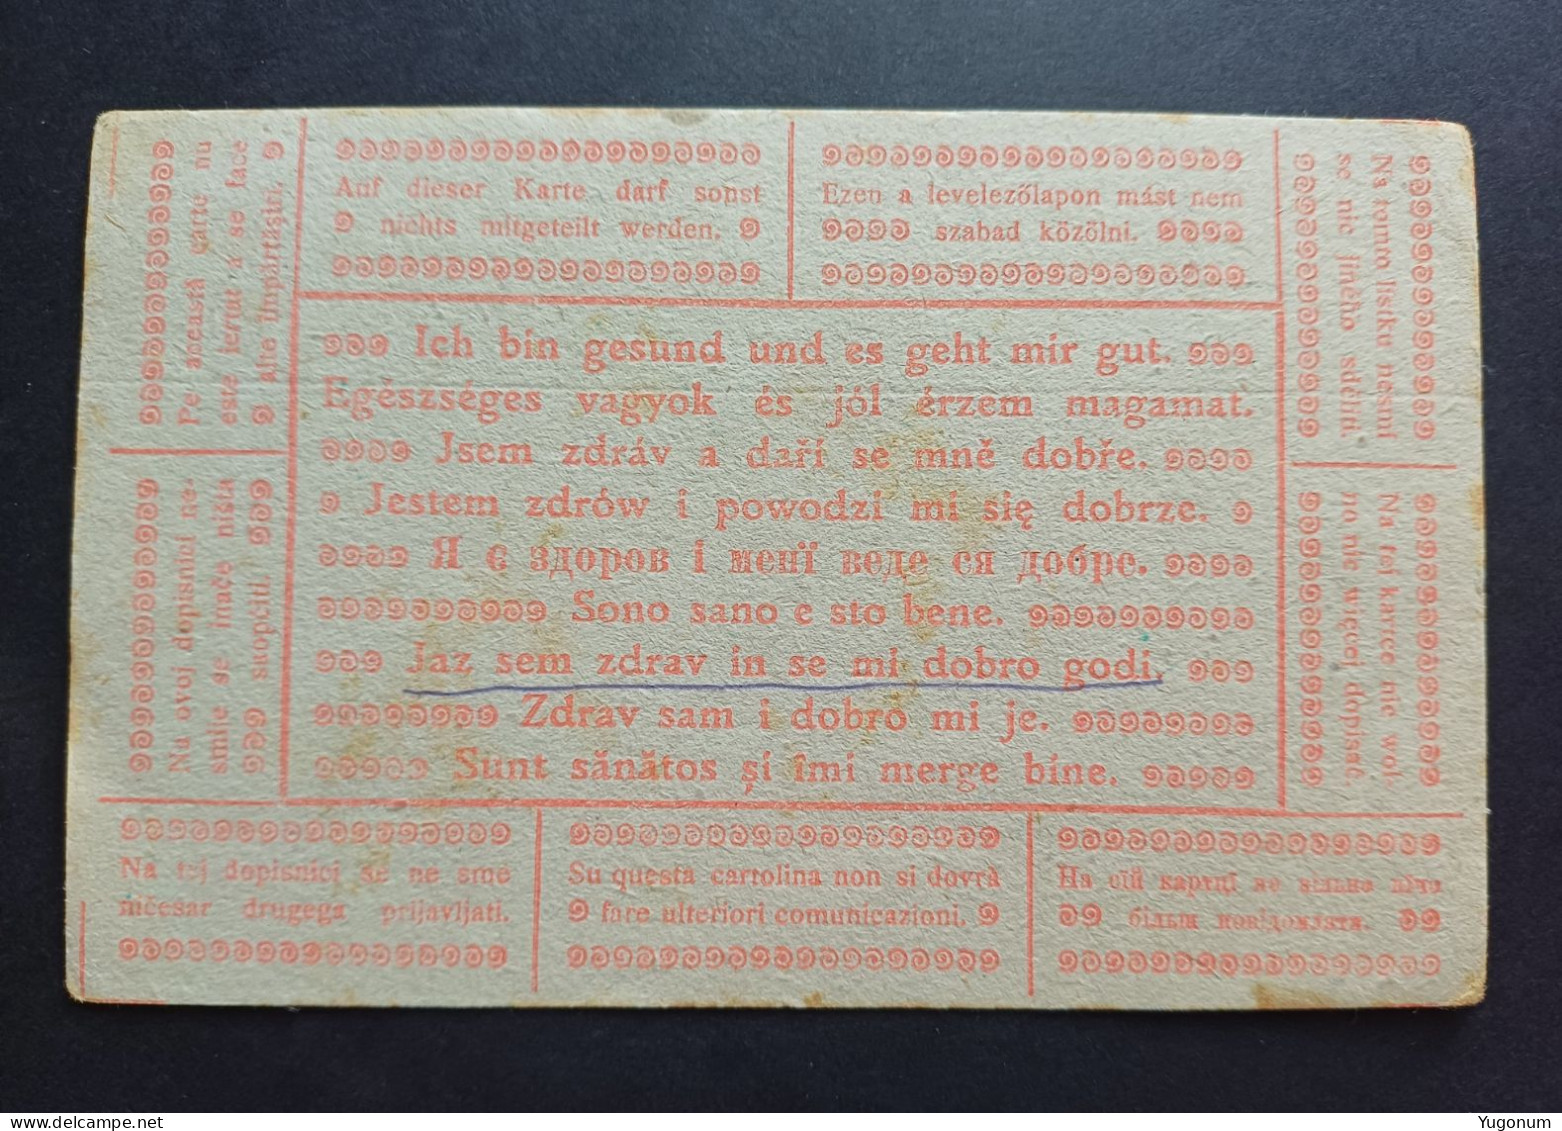 Yugoslavia, Slovenia 1917 Feldpostkarte , Sent To Krize Pri Trzicu (No 3055) - Préphilatélie